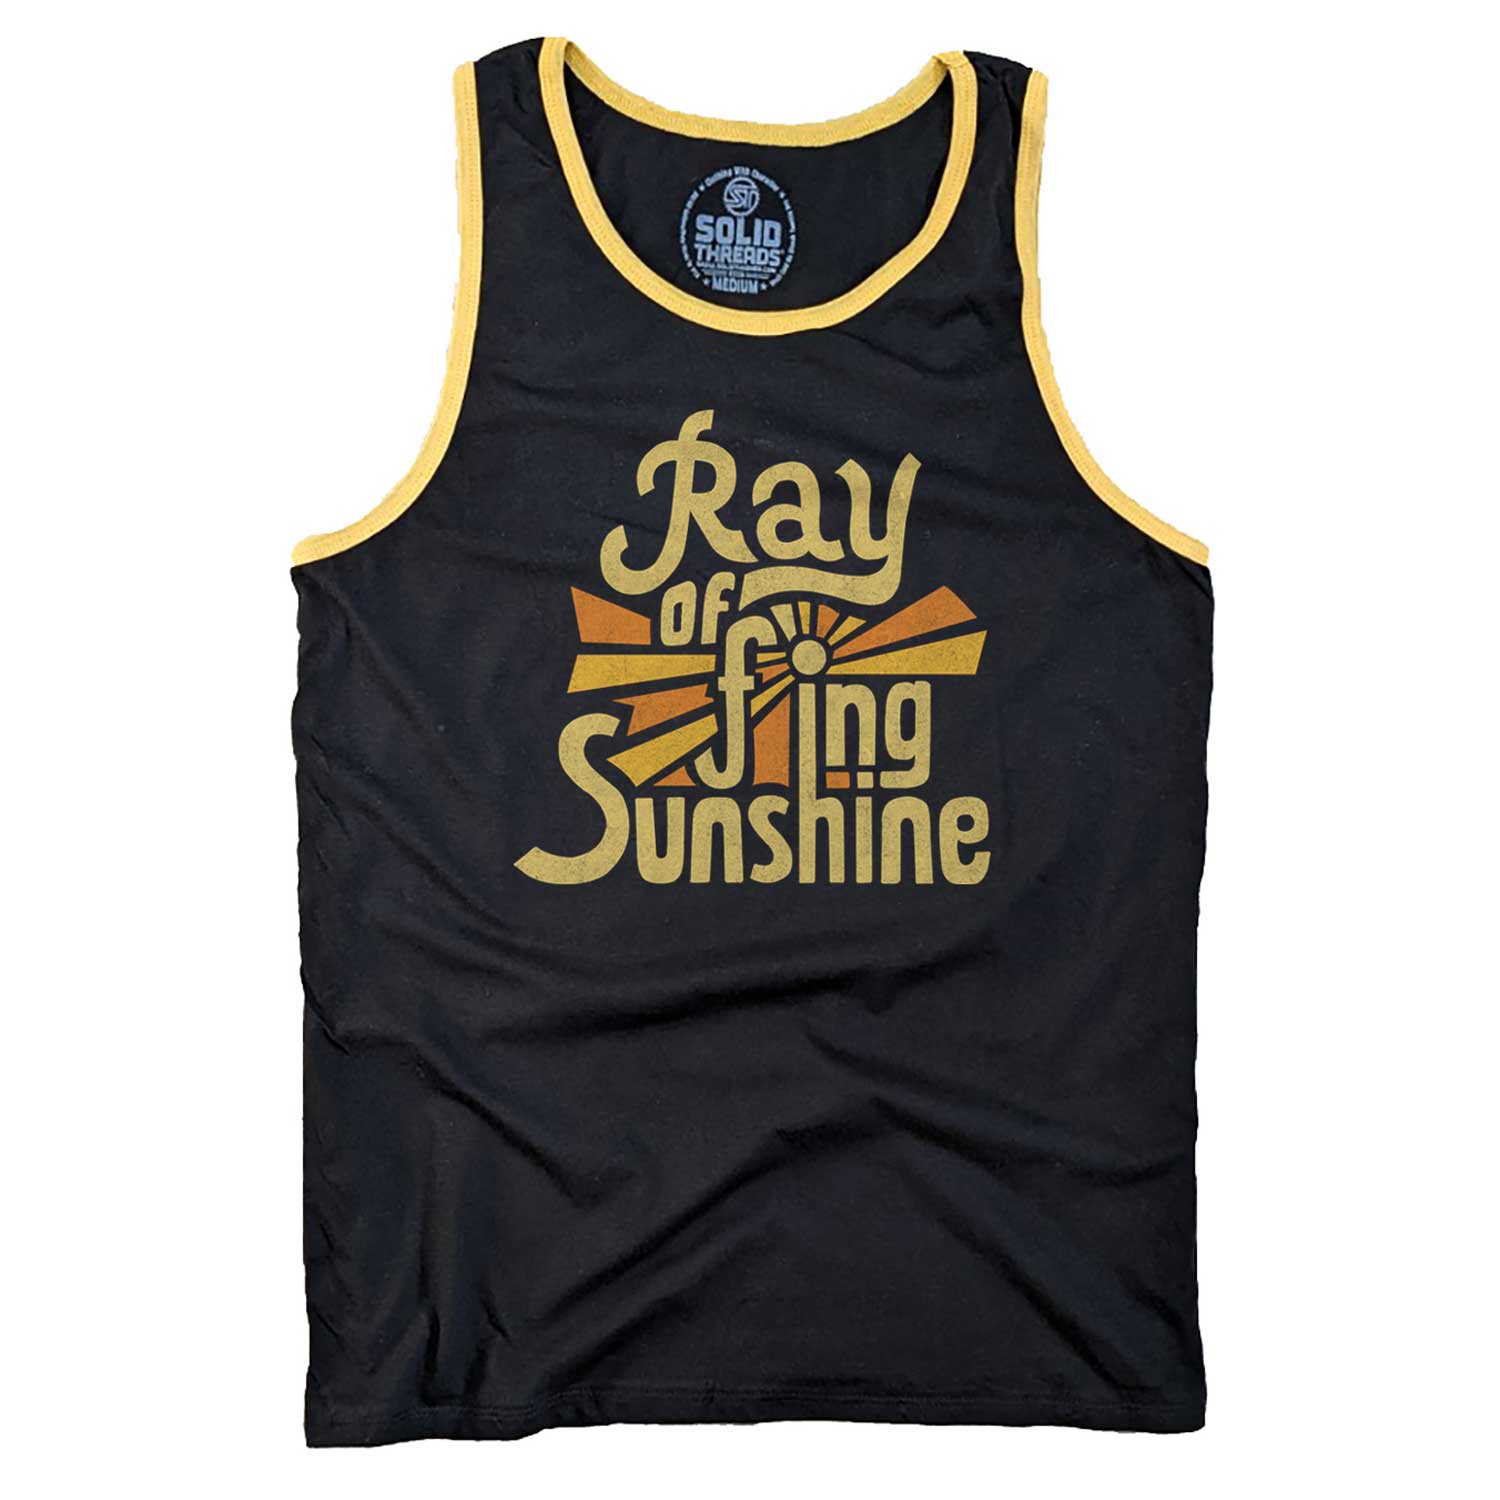 Ray of F'ing Sunshine Ringer Tank Top